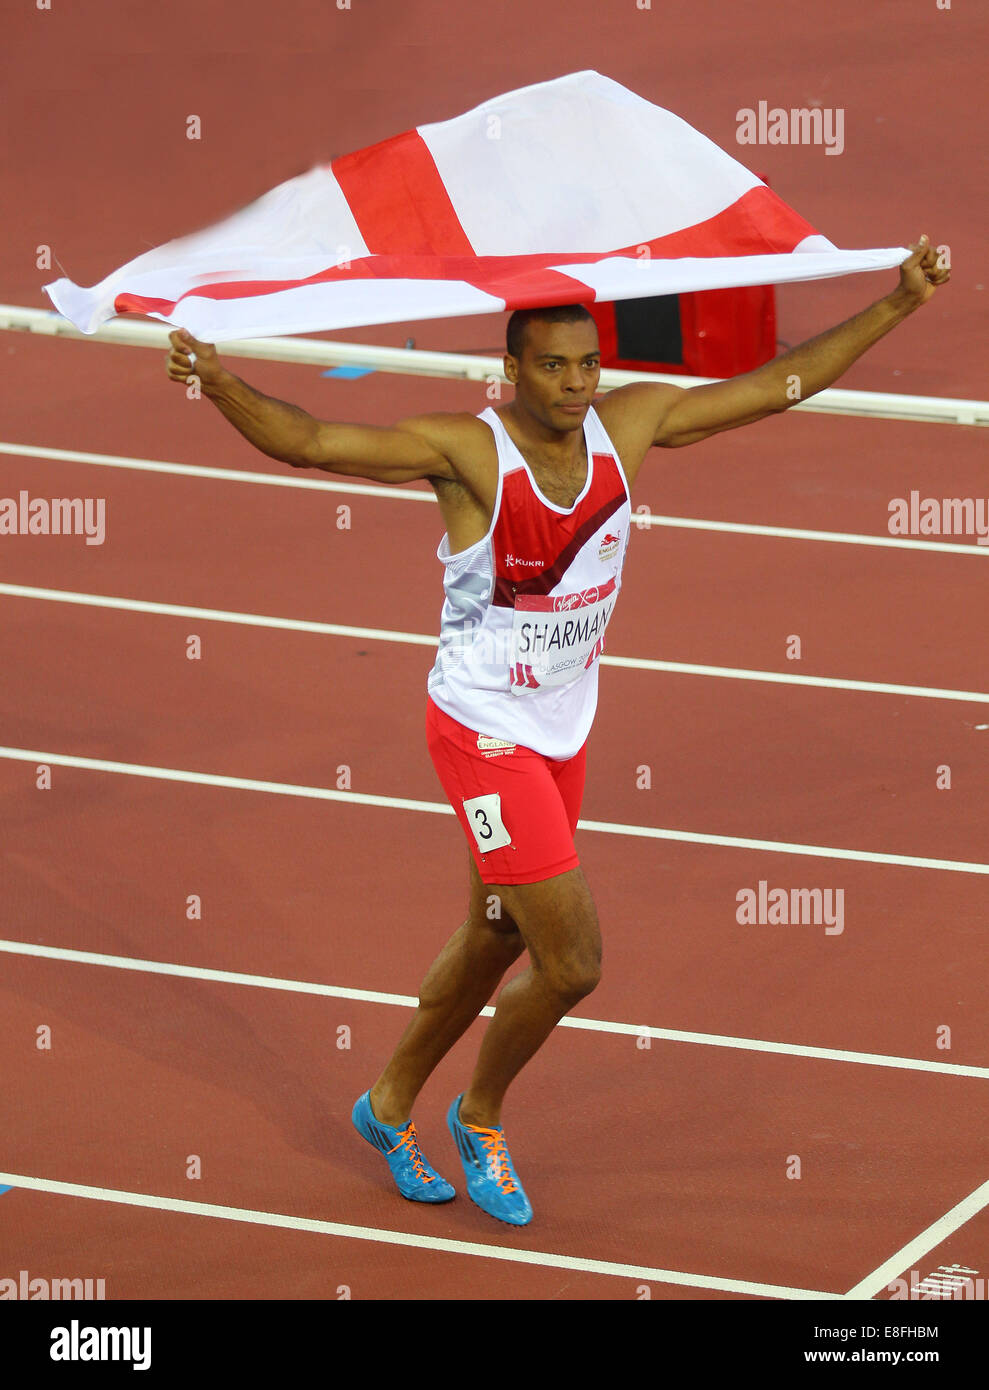 William Sharman (ENG)-Silbermedaille - Herrenfinale 110m. Leichtathletik - Hampden Park - Glasgow - UK - 29.07.2014 - Commonwealth Games Stockfoto